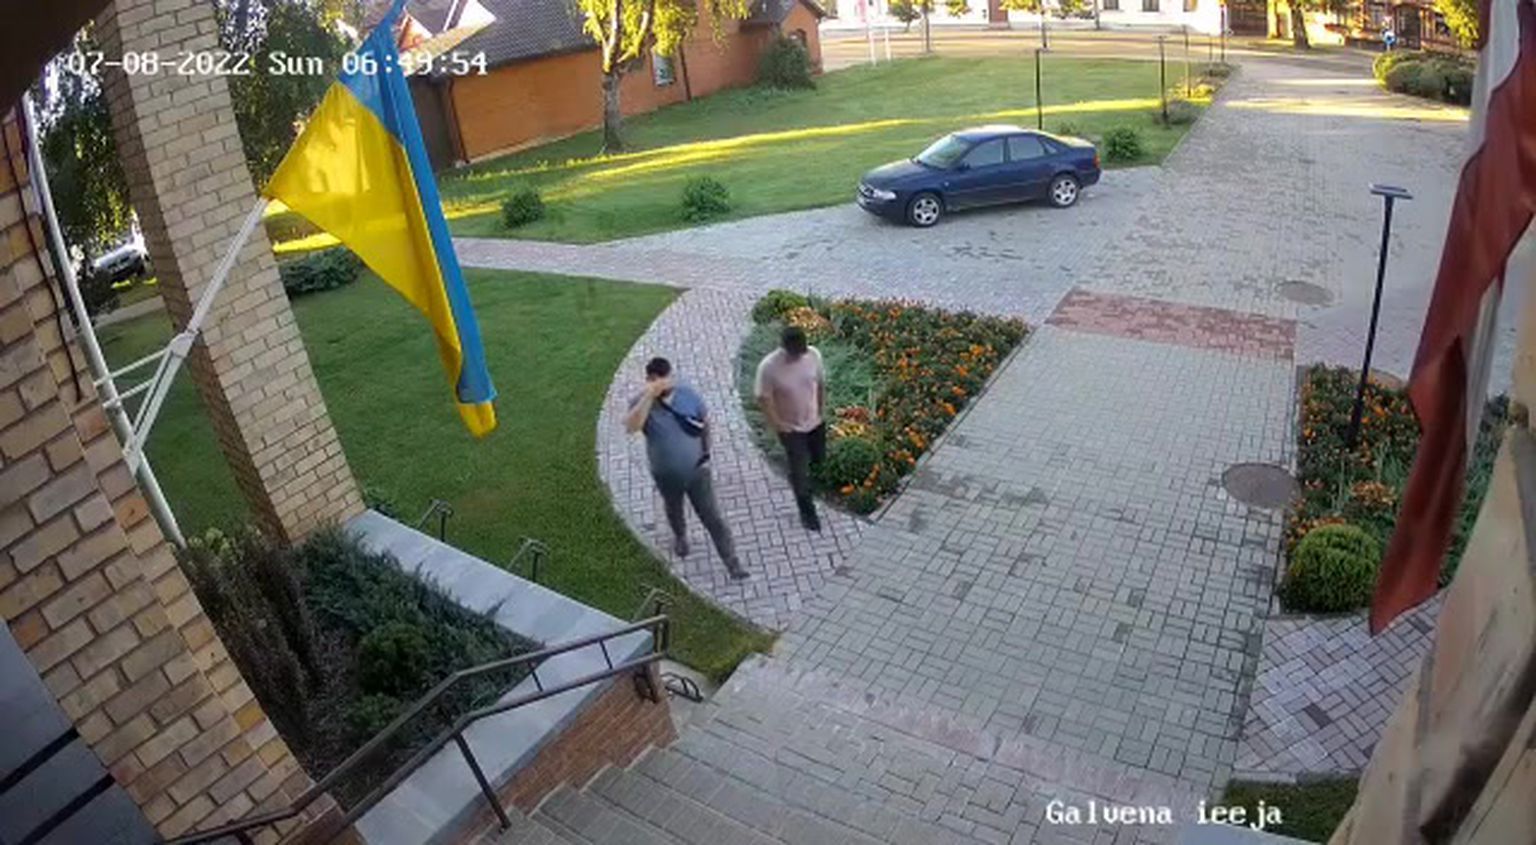 Kliedzot "Slava Krievijai", divi vīrieši Jēkabpilī norauj Ukrainas karogu